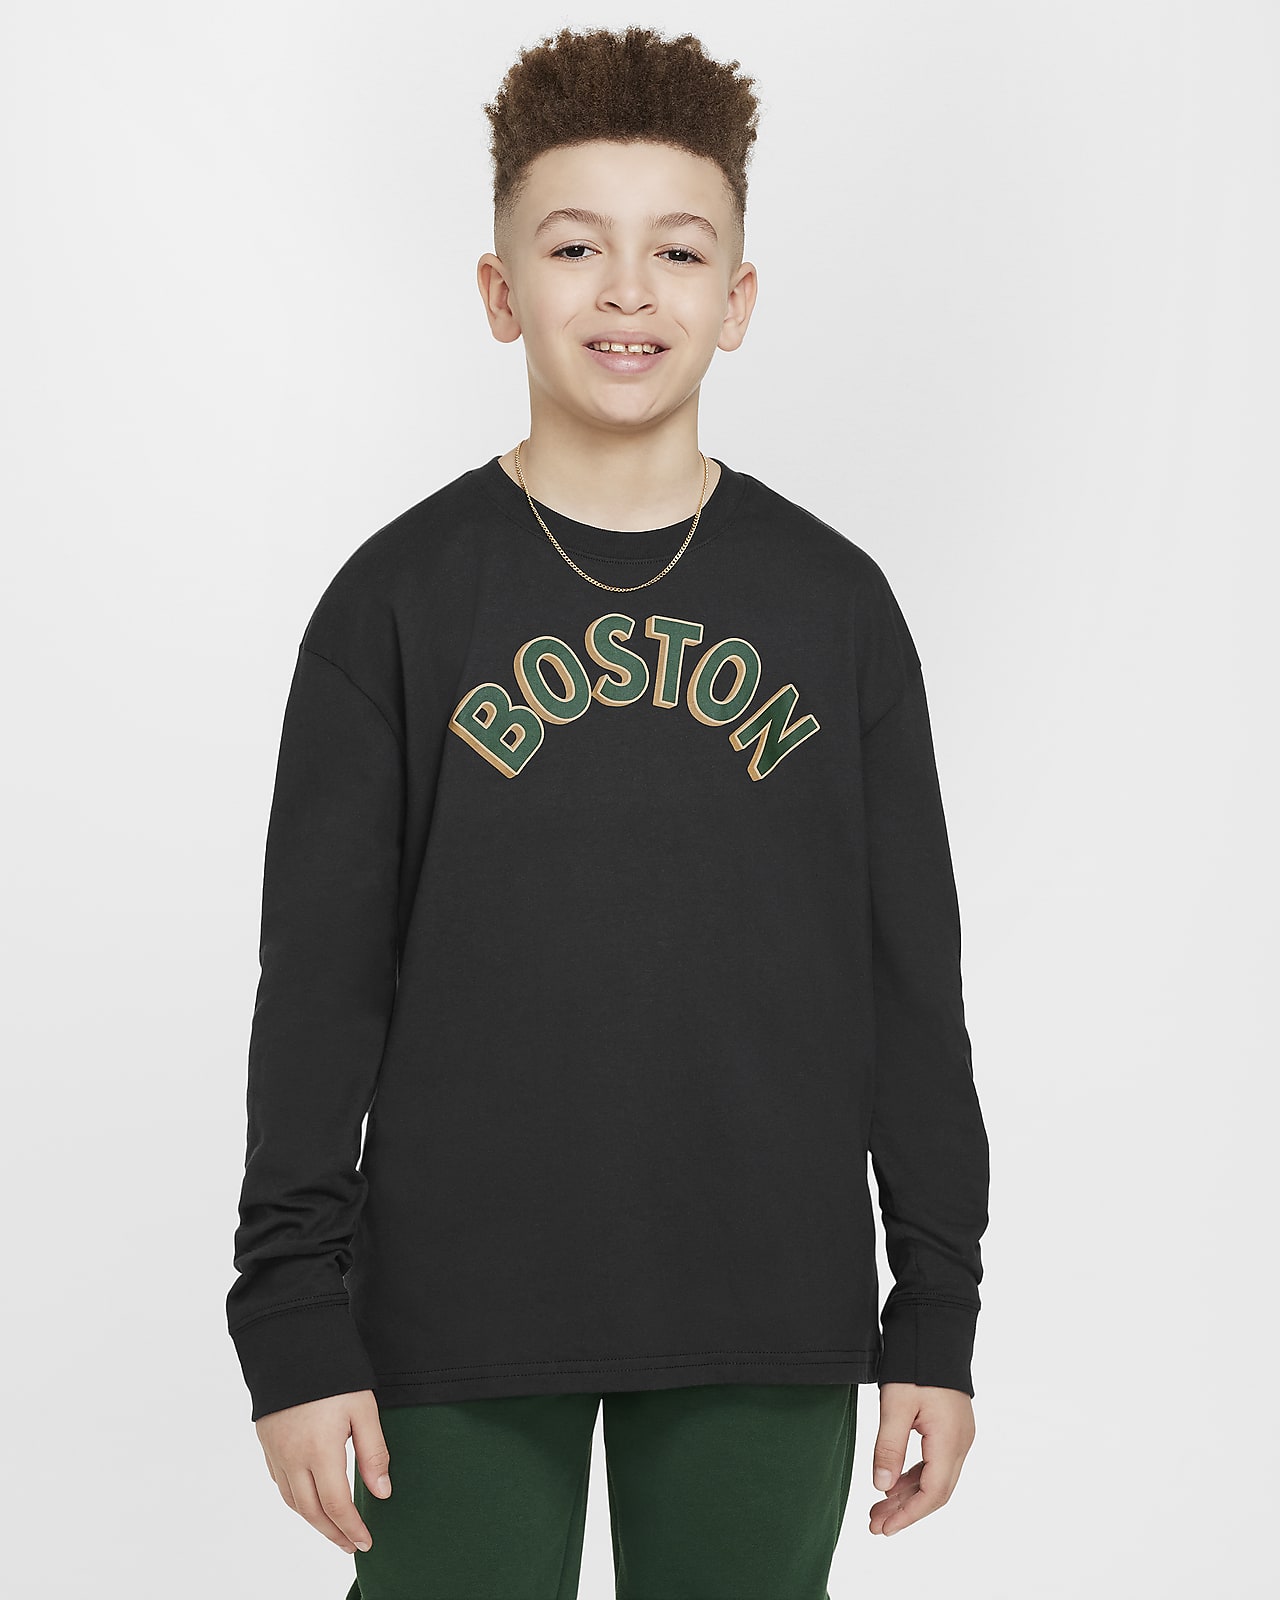 Μακρυμάνικο T-Shirt Nike NBA Max90 Μπόστον Σέλτικς 2023/24 City Edition για μεγάλα αγόρια